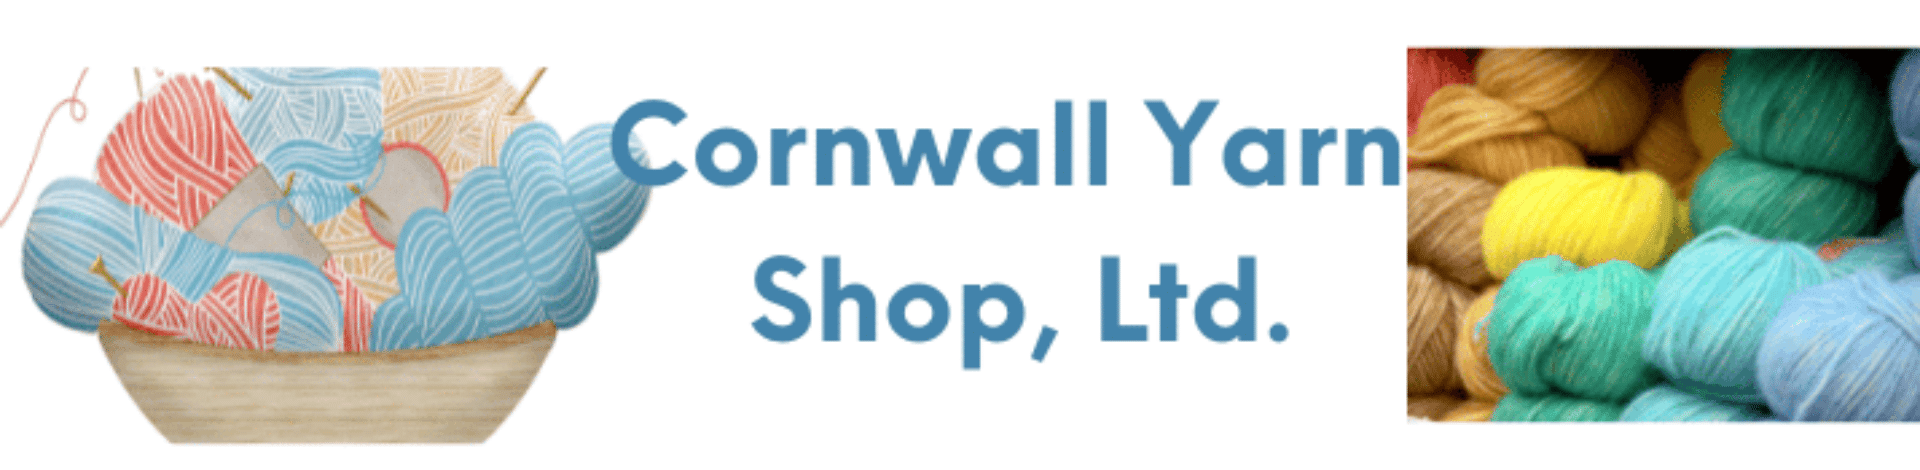 Cornwall Yarn Shop, Ltd.